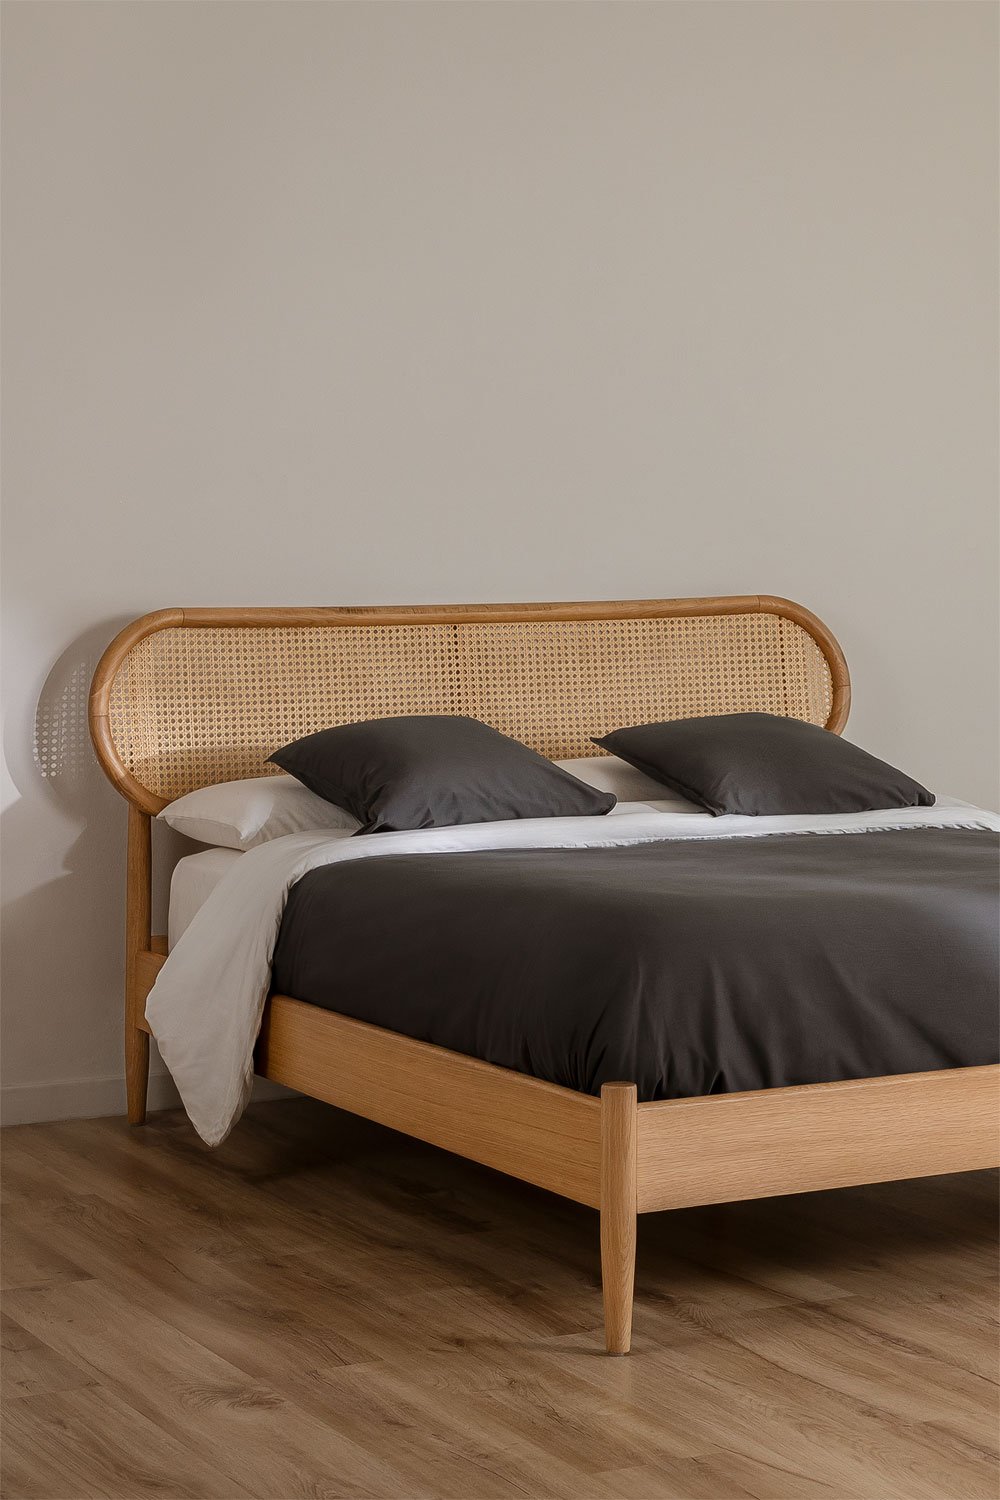 Drewniane łóżko Fraser, obrazek w galerii 1